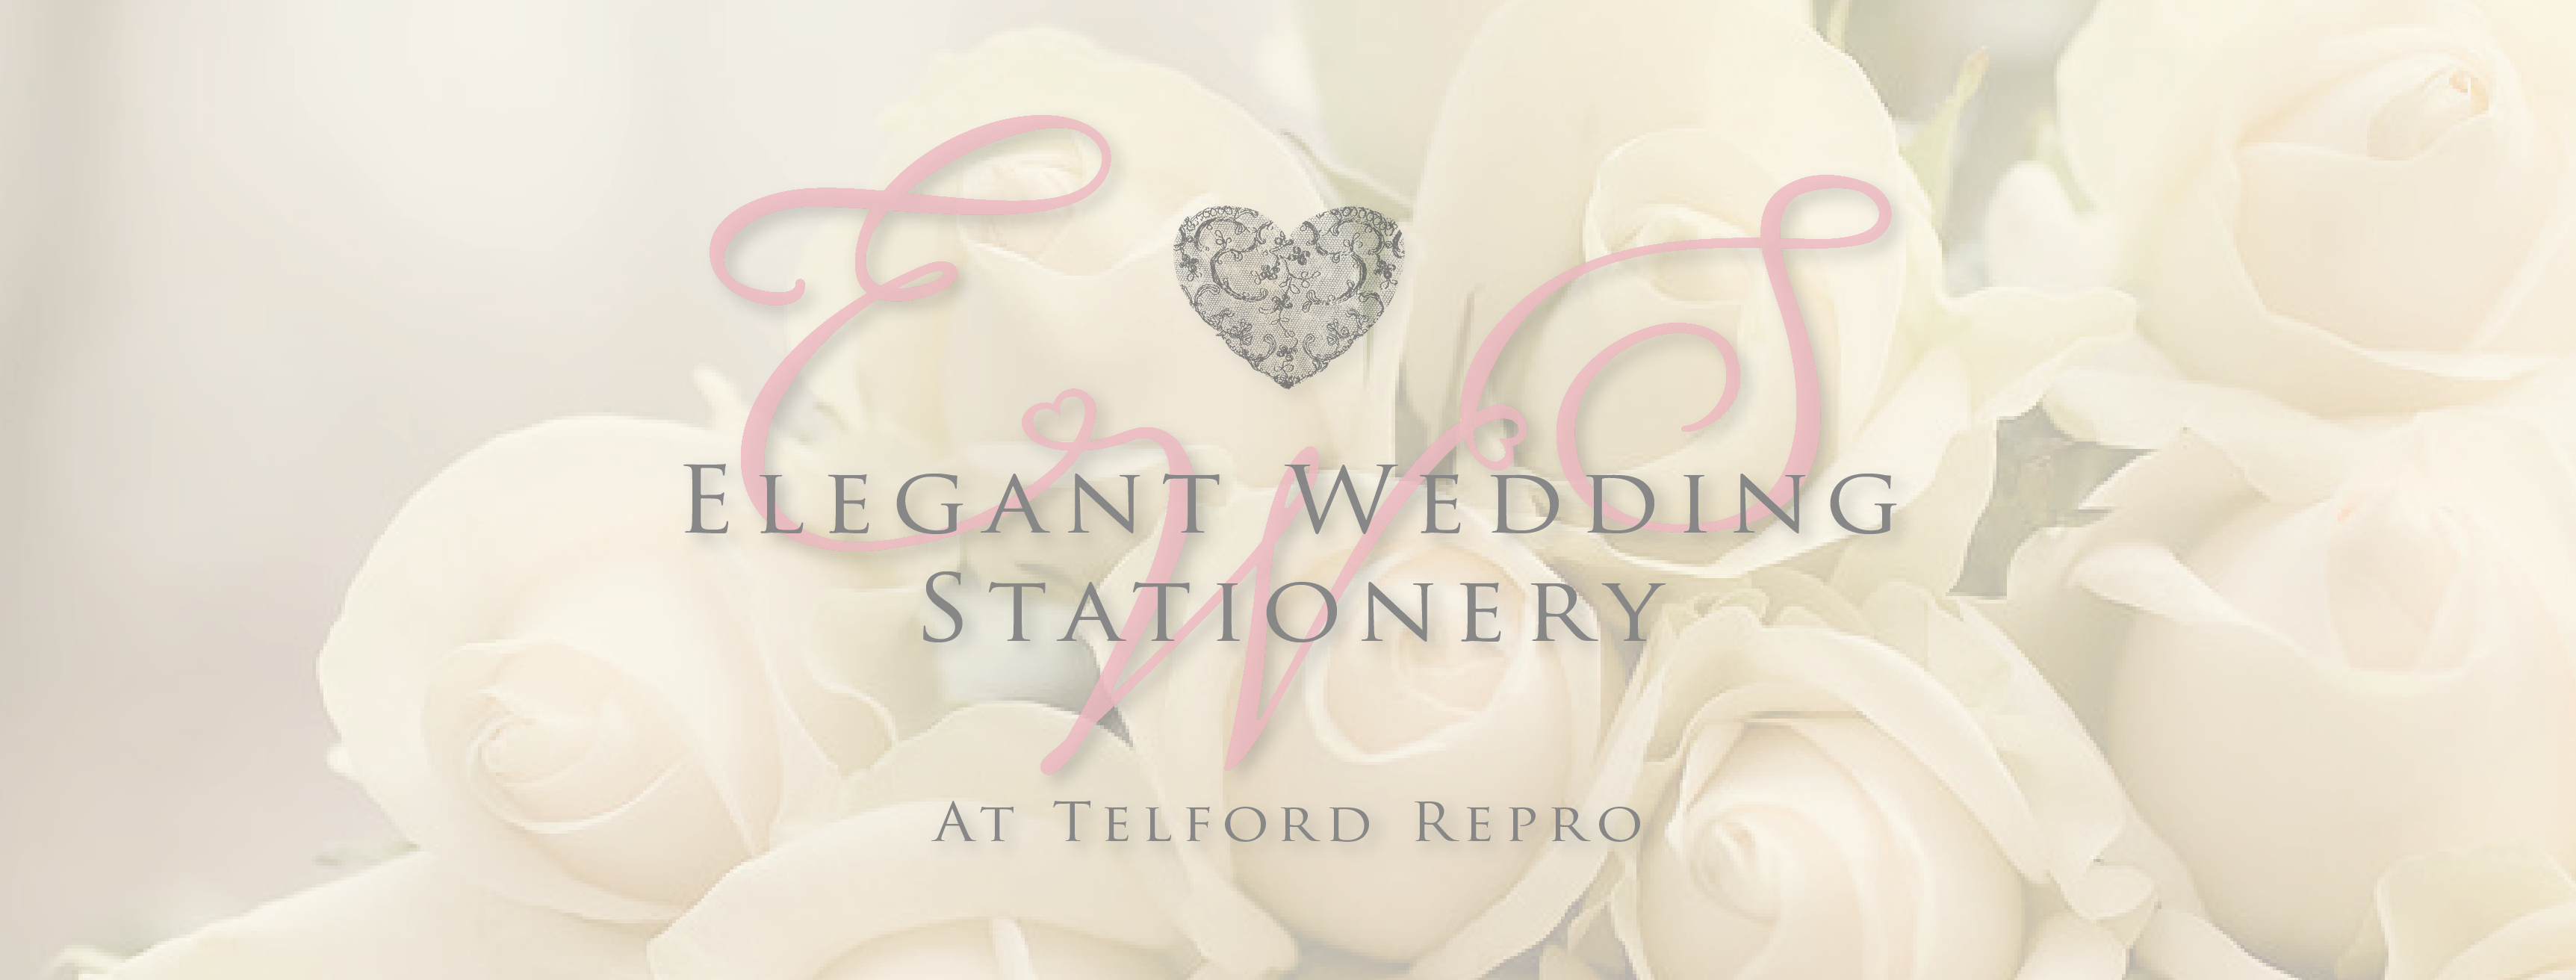 Elegant Wedding Stationery